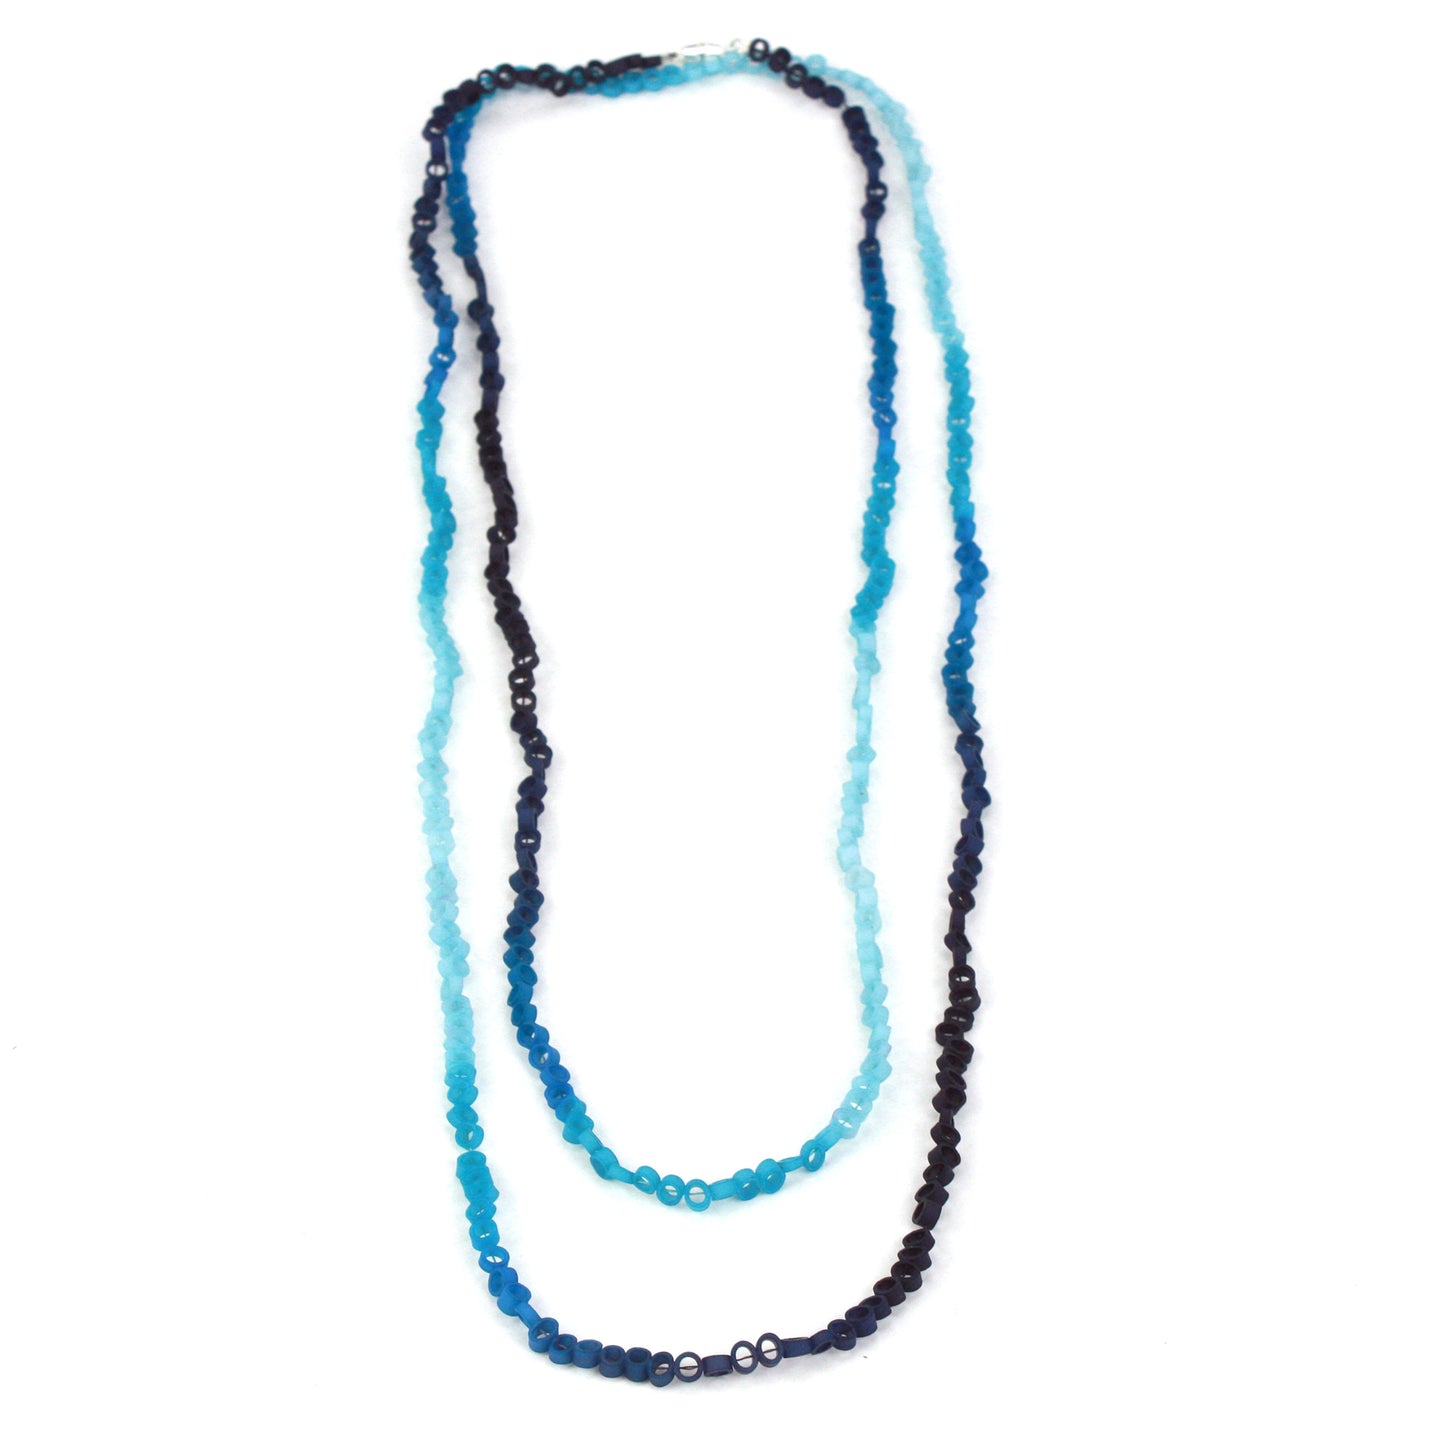 Little links necklace - Blues